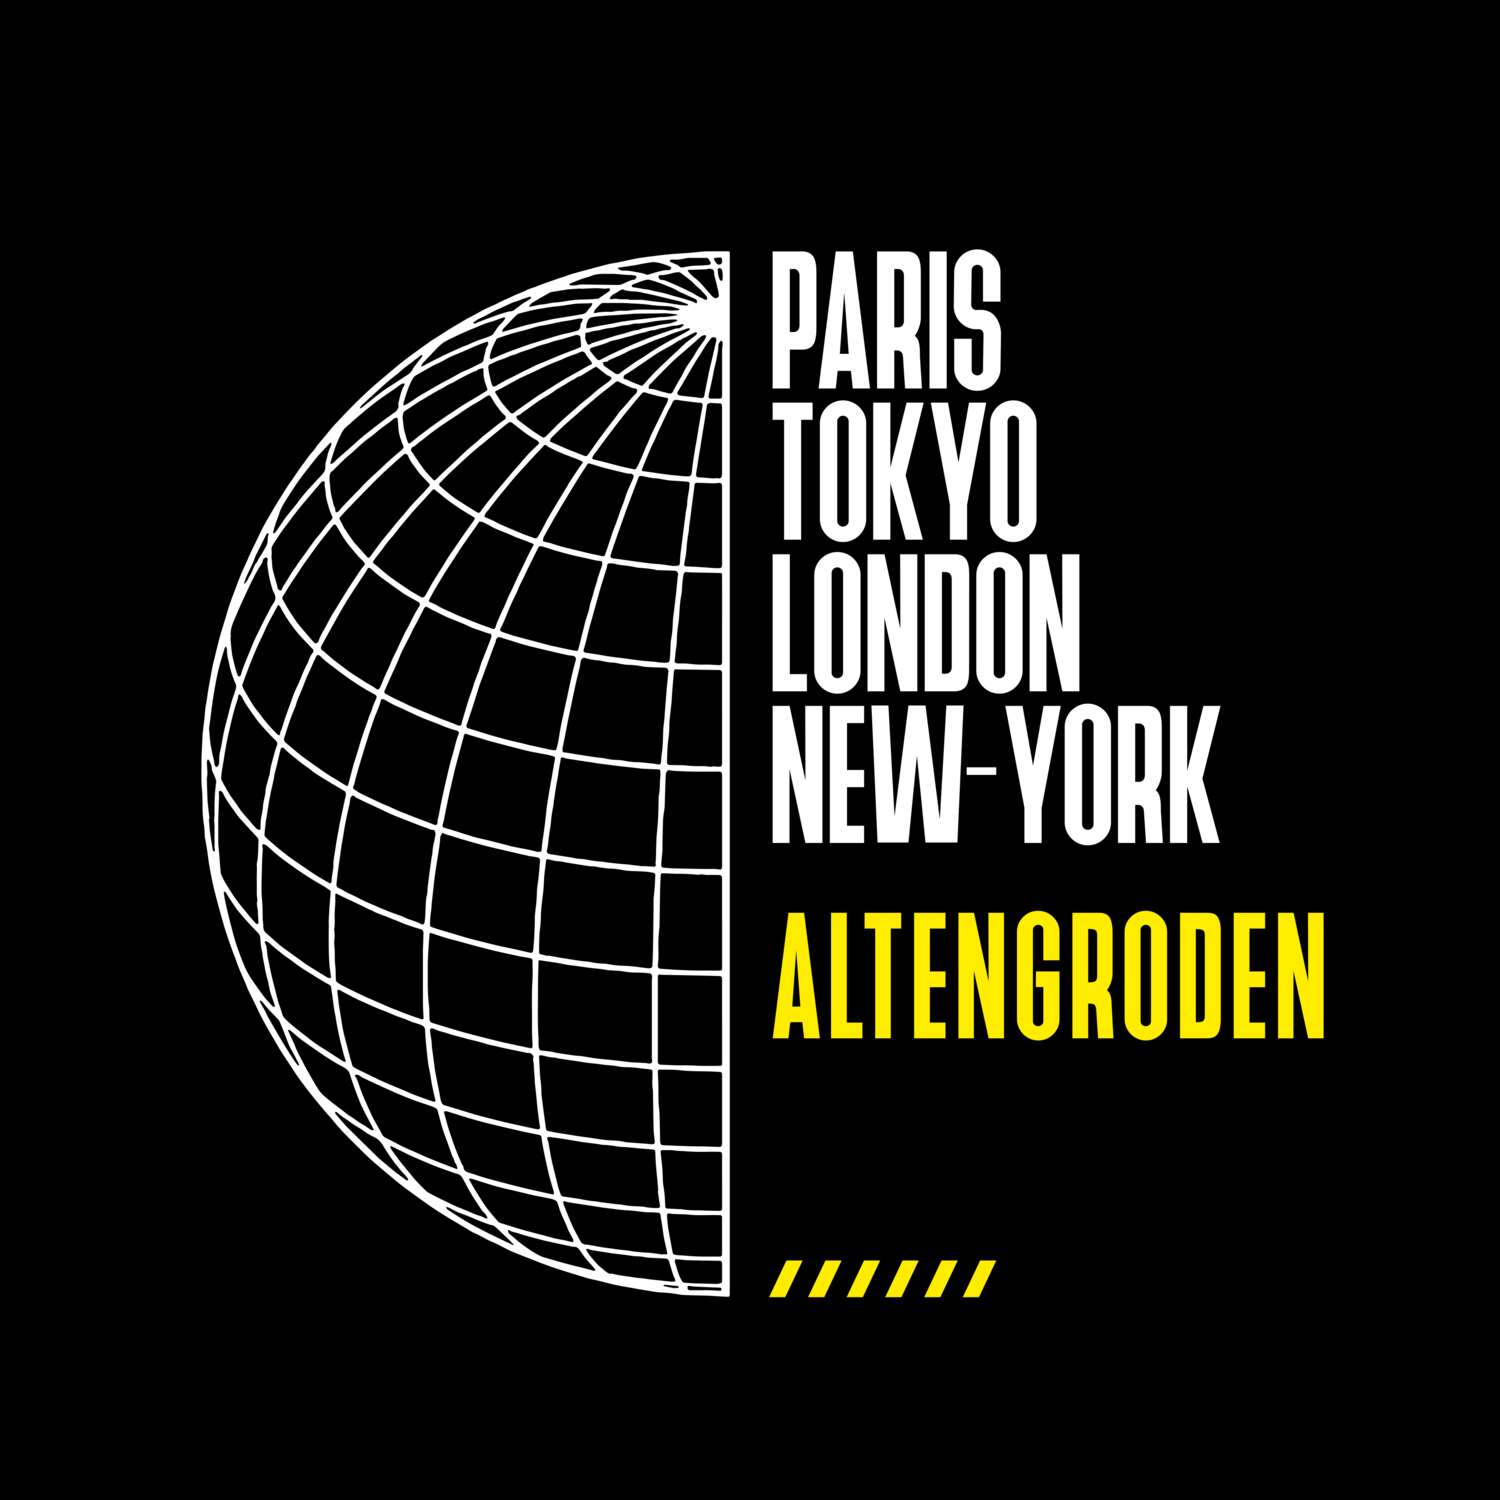 Altengroden T-Shirt »Paris Tokyo London«